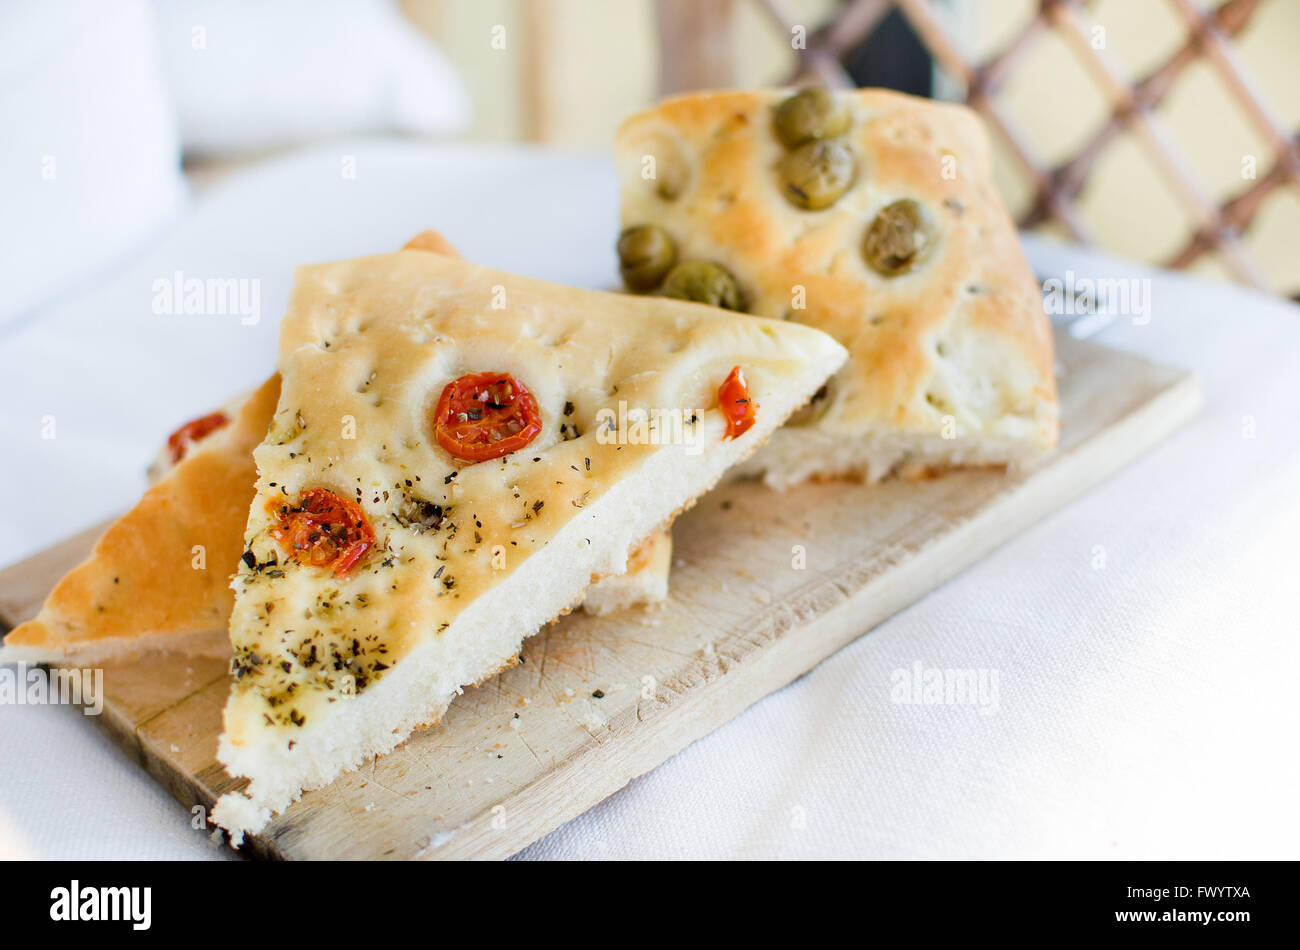 Italie tomates olives pain focaccia télévision cuite au four pain italien genovese ligure Banque D'Images